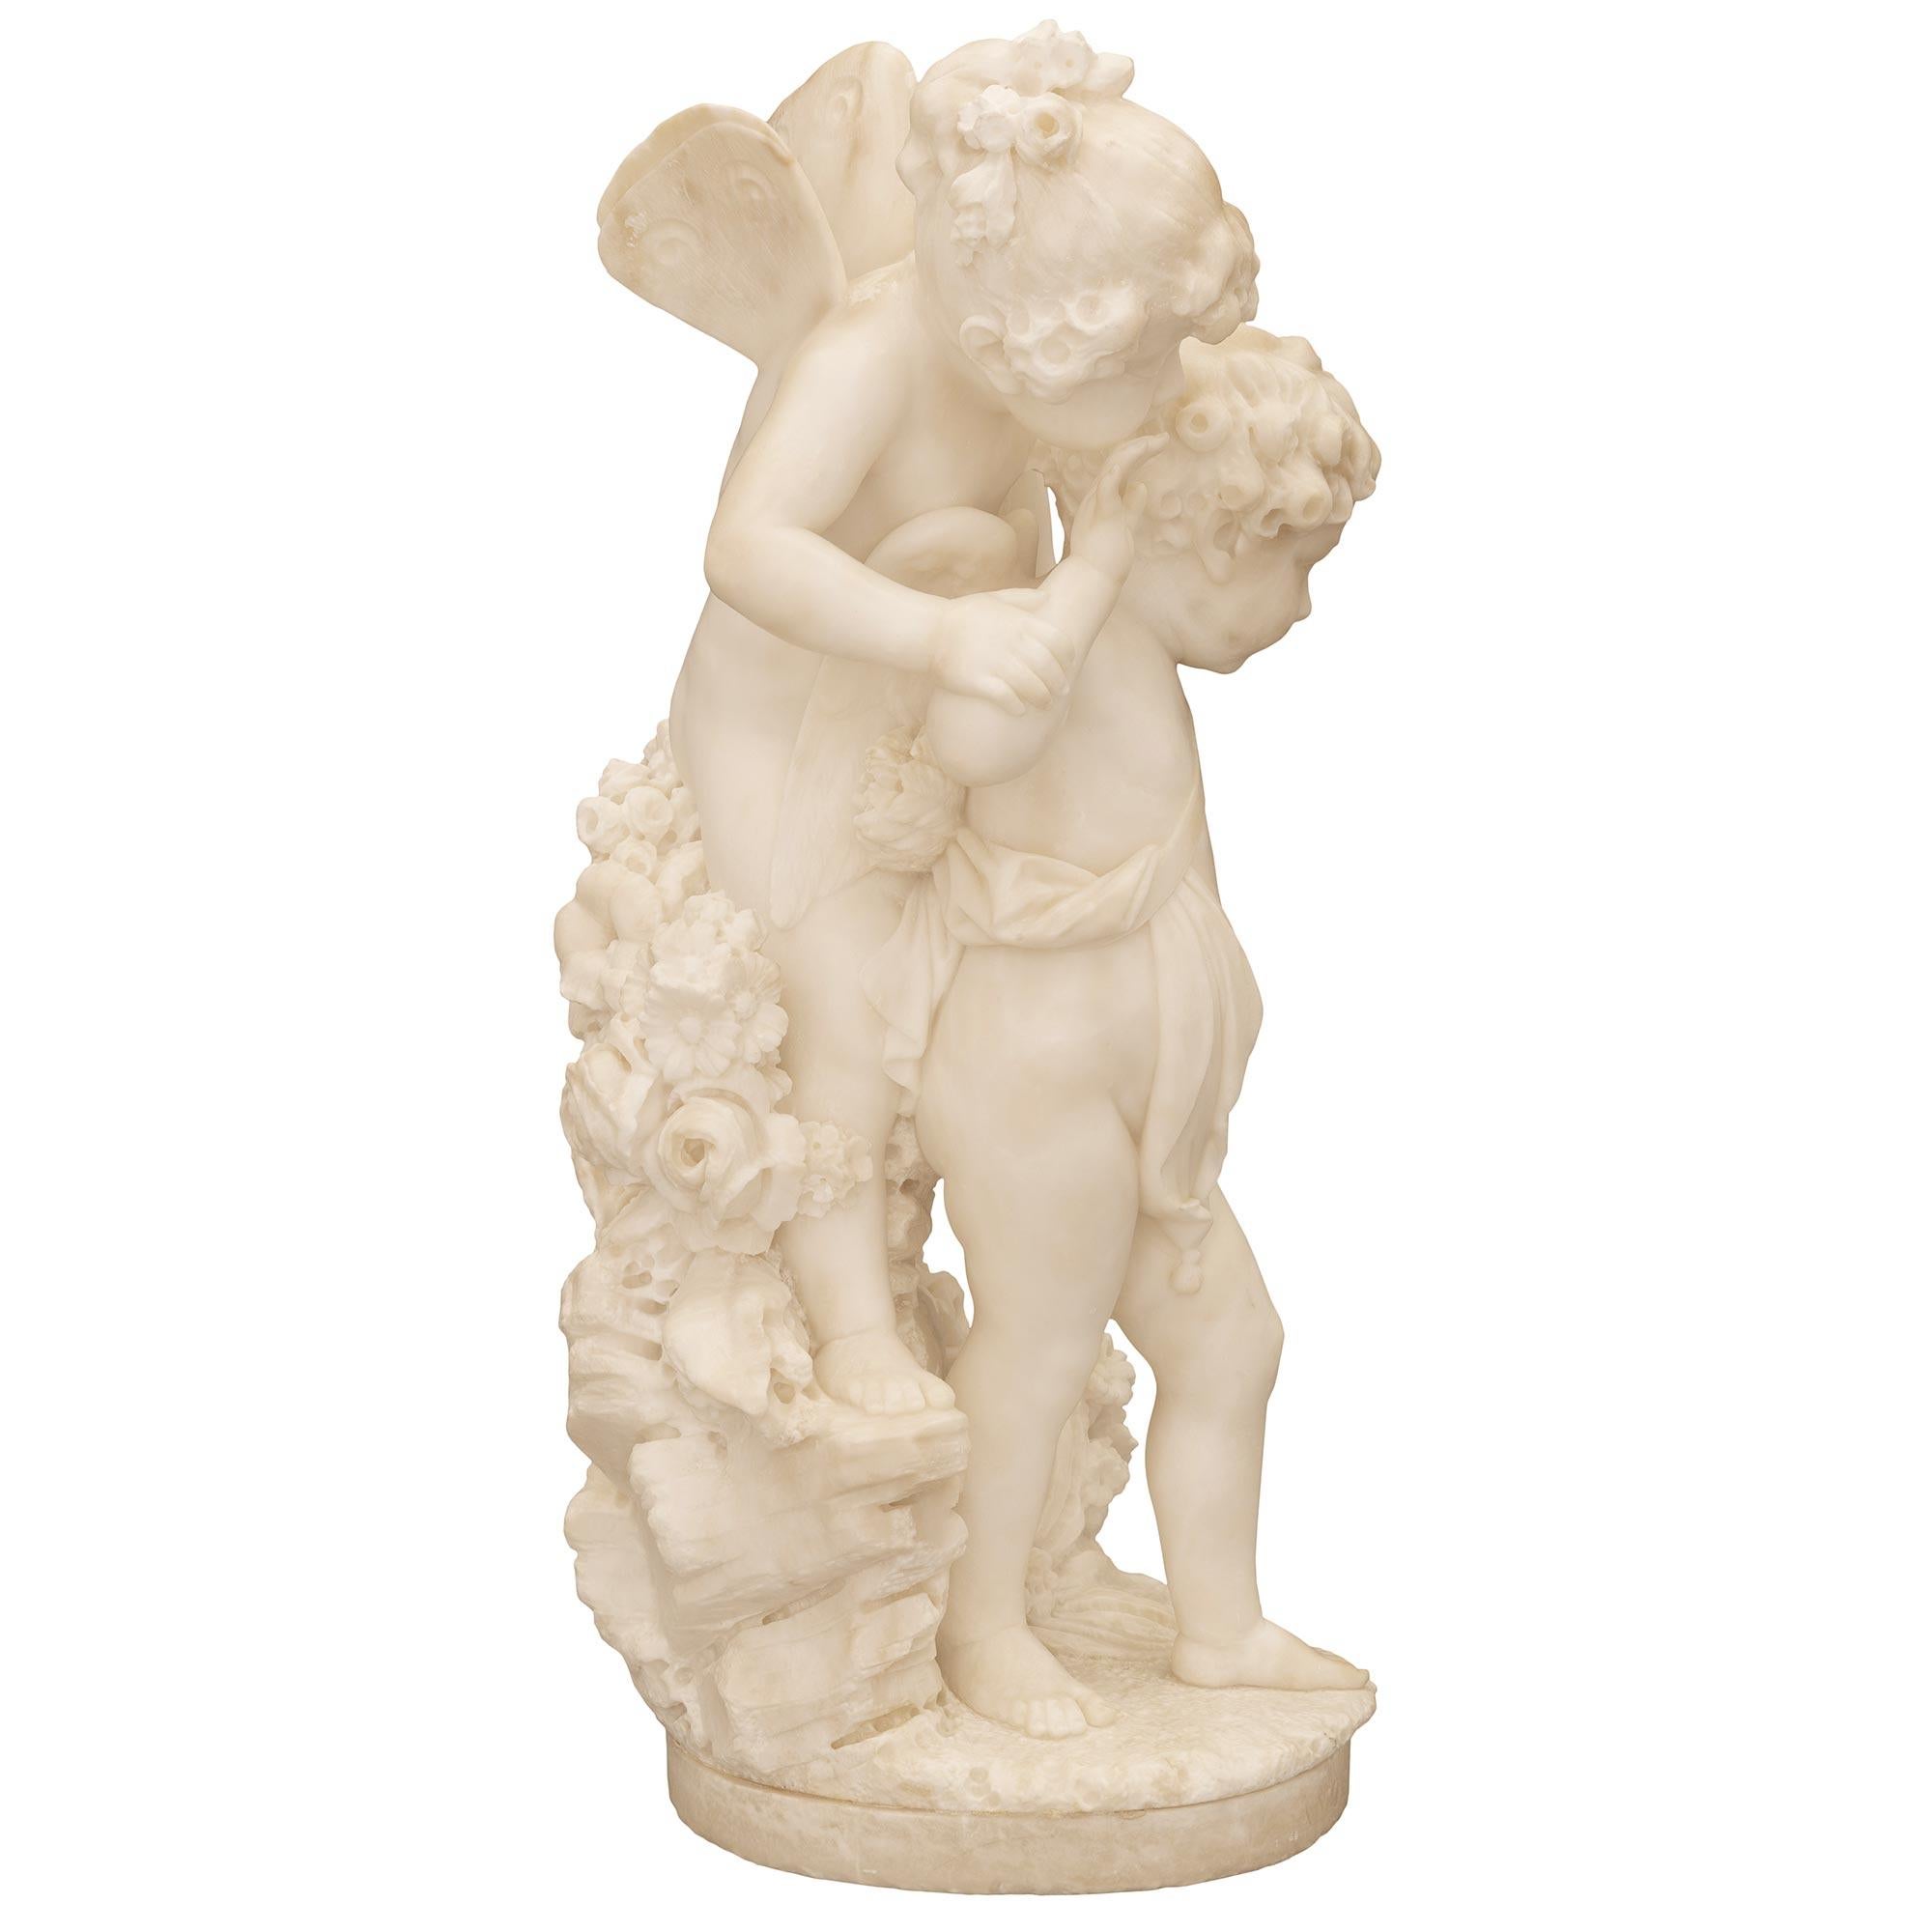 Italian 19th Century White Carrara Marble Statue Titled “Amore Sdegnato” For Sale 1